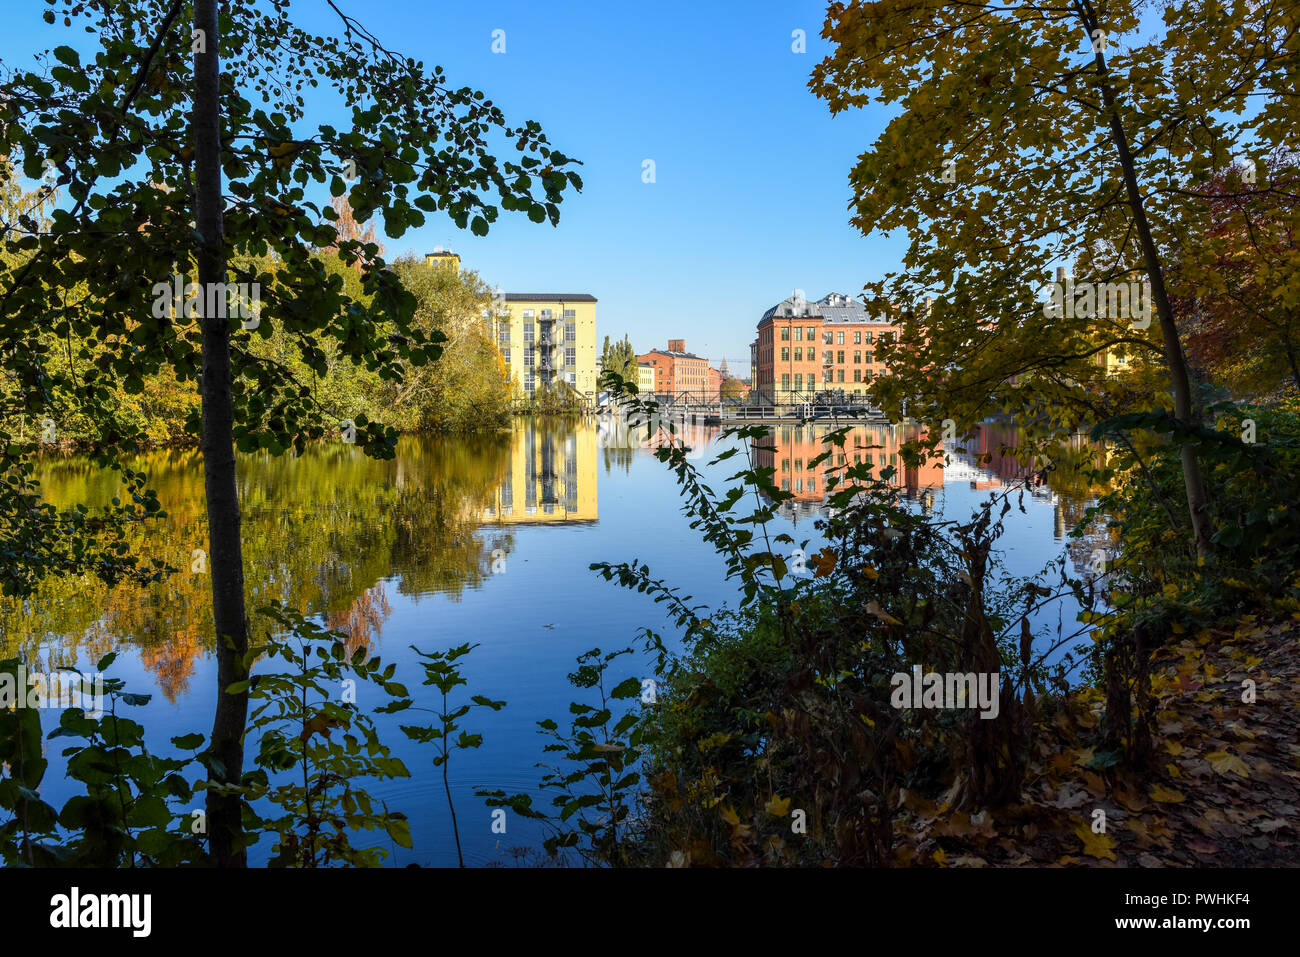 Vue vers le paysage industriel historique sur une journée ensoleillée en octobre 2018 au parc de la ville Abackarna le long de la rivière Motala Norrkoping en, en Suède. Banque D'Images